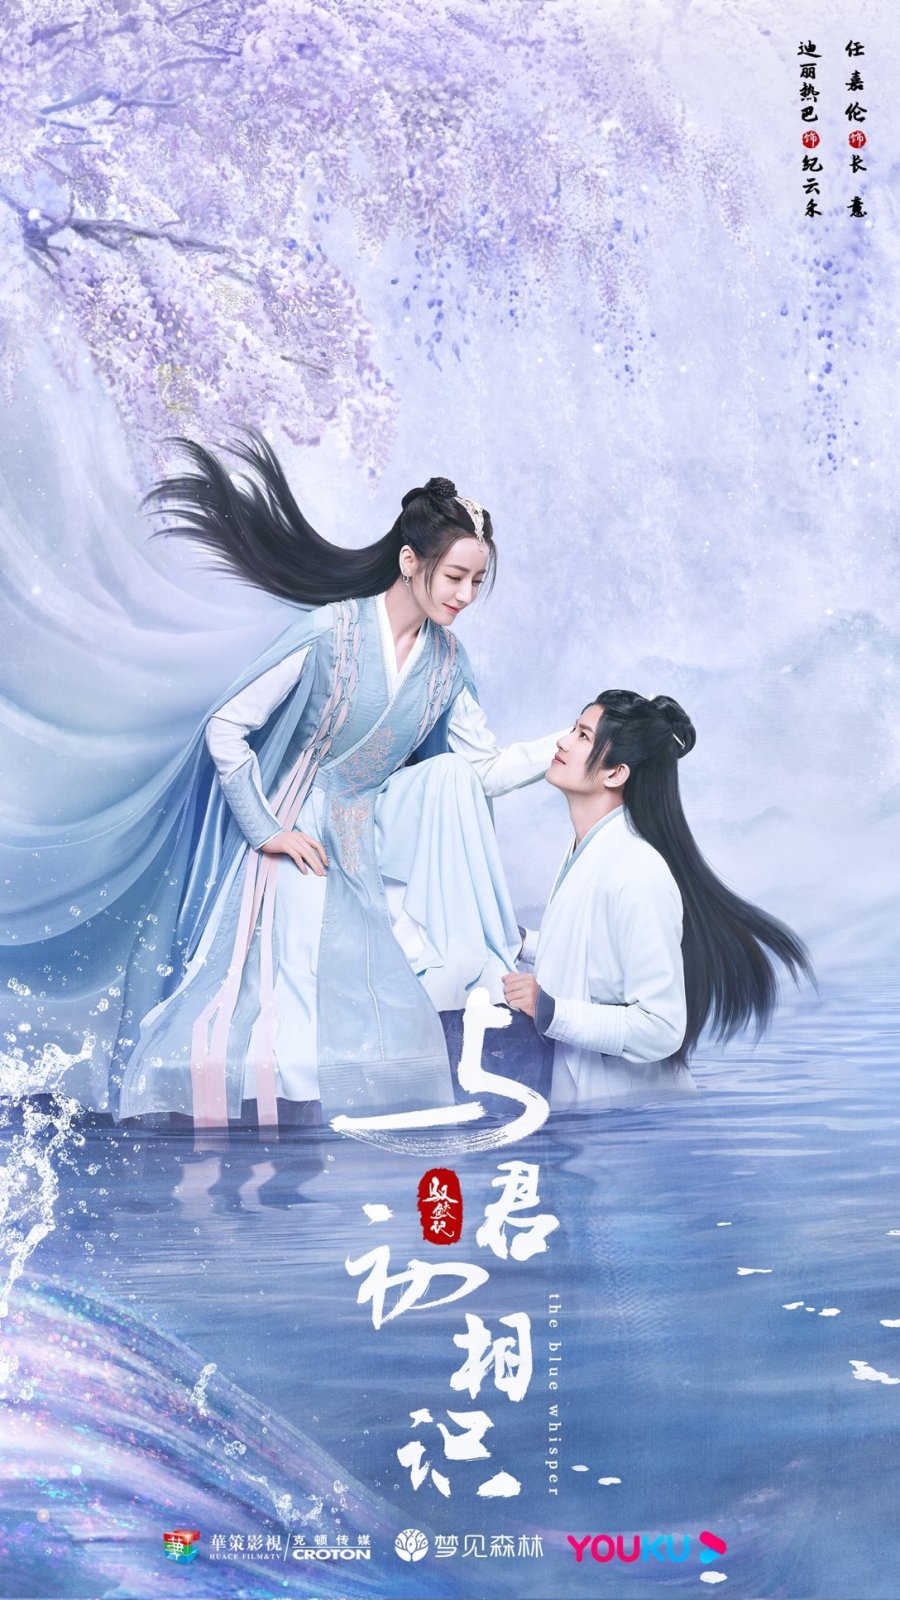 Phim tiên hiệp Trung Quốc hoặc nhất: Ngự phú ký – The xanh rì whisper (2022)